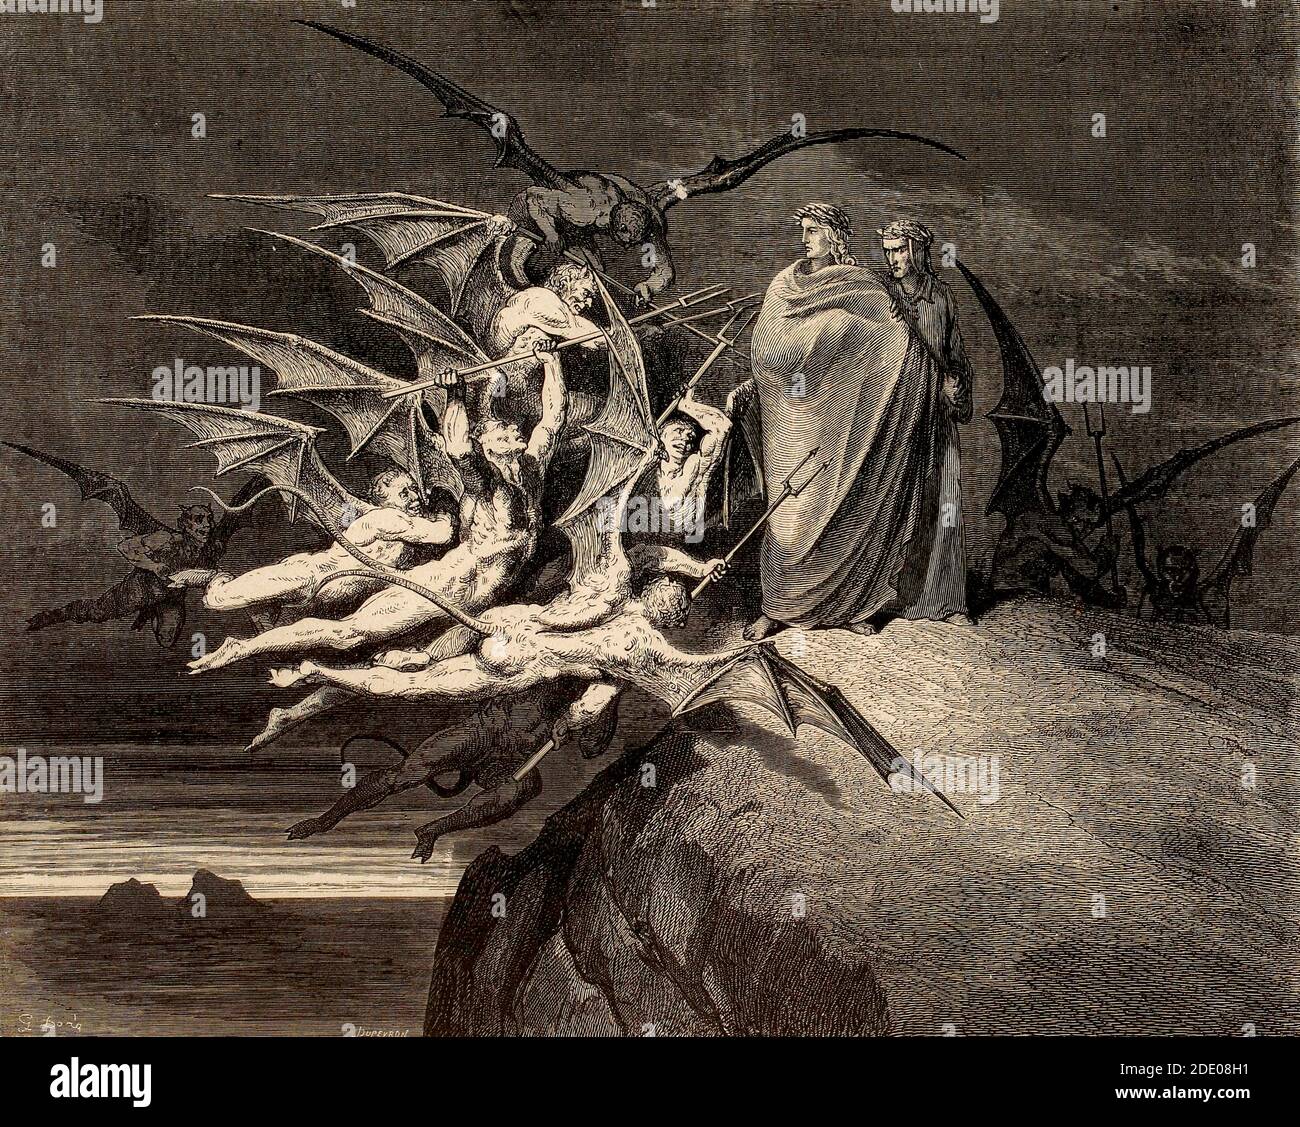 Dante Divina Commedia - Inferno - XXI canto dove gli abbezzatori Sono puniti - la Malebranche - VIII cerchio - illustrazione Di Gustave Dorè Foto Stock